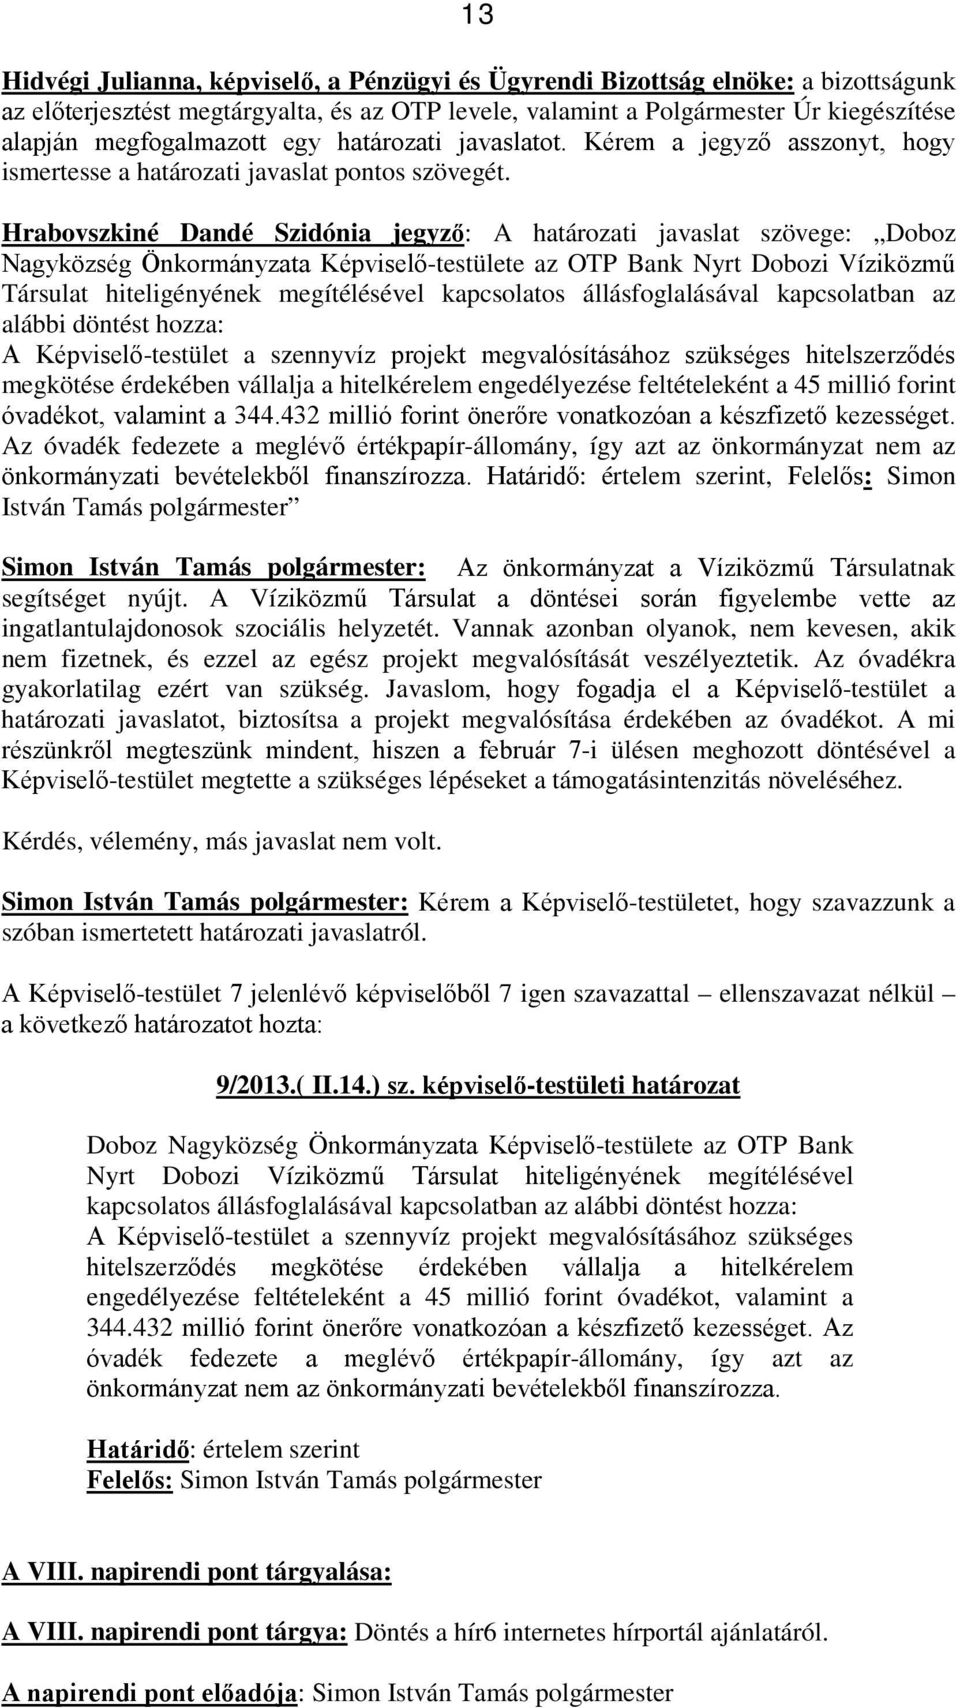 Hrabovszkiné Dandé Szidónia jegyző: A határozati javaslat szövege: Doboz Nagyközség Önkormányzata Képviselő-testülete az OTP Bank Nyrt Dobozi Víziközmű Társulat hiteligényének megítélésével